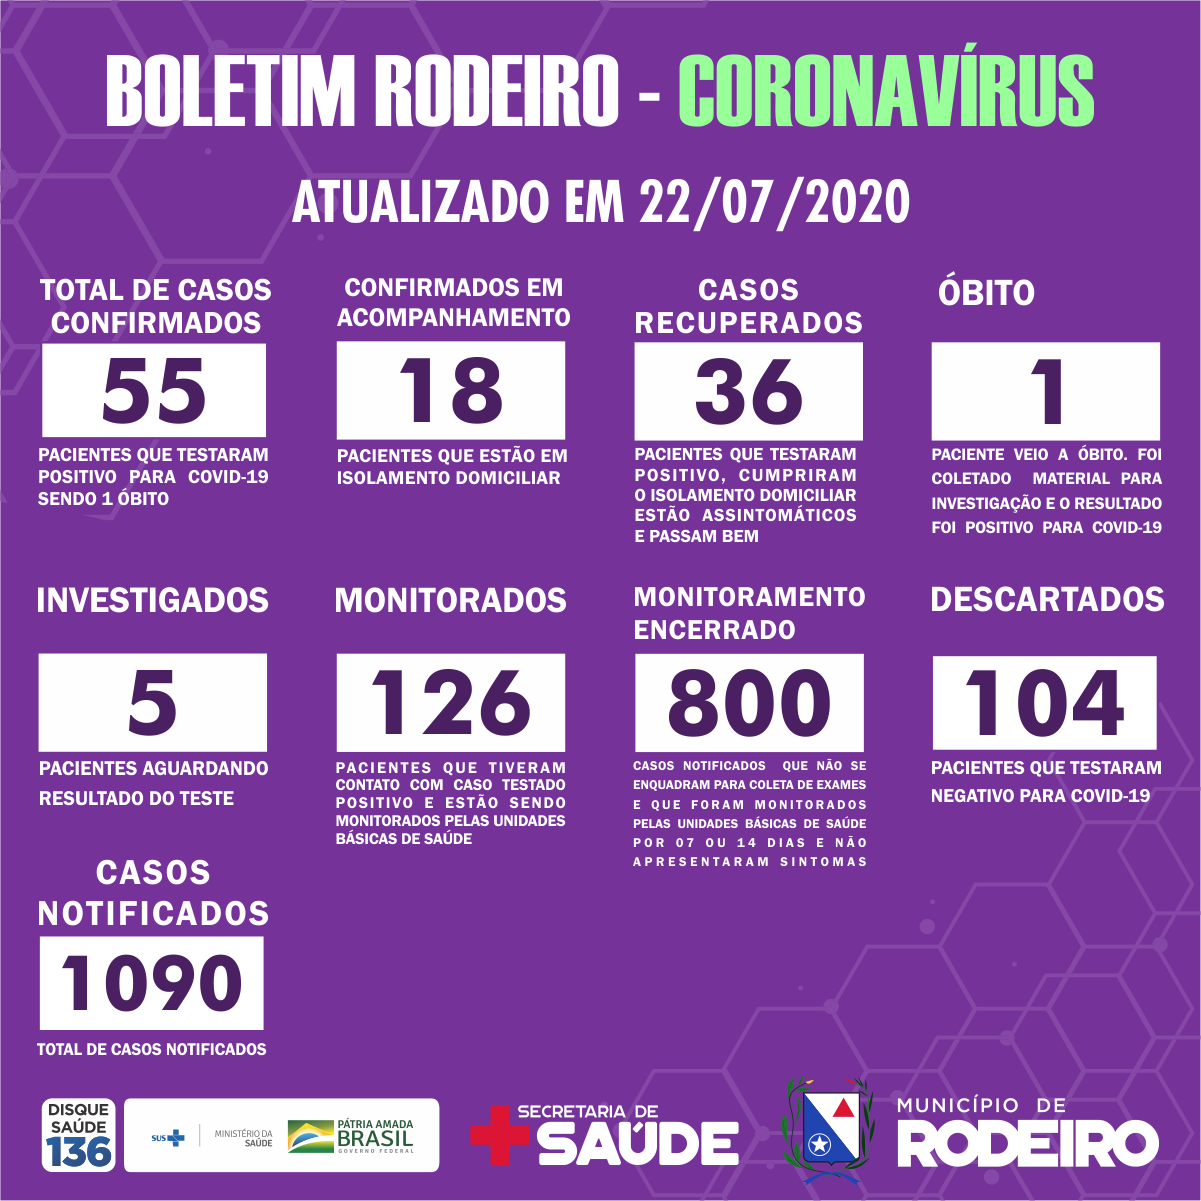 Boletim epidemiológico do Município de Rodeiro coronavírus, atualizado em 22/07/2020